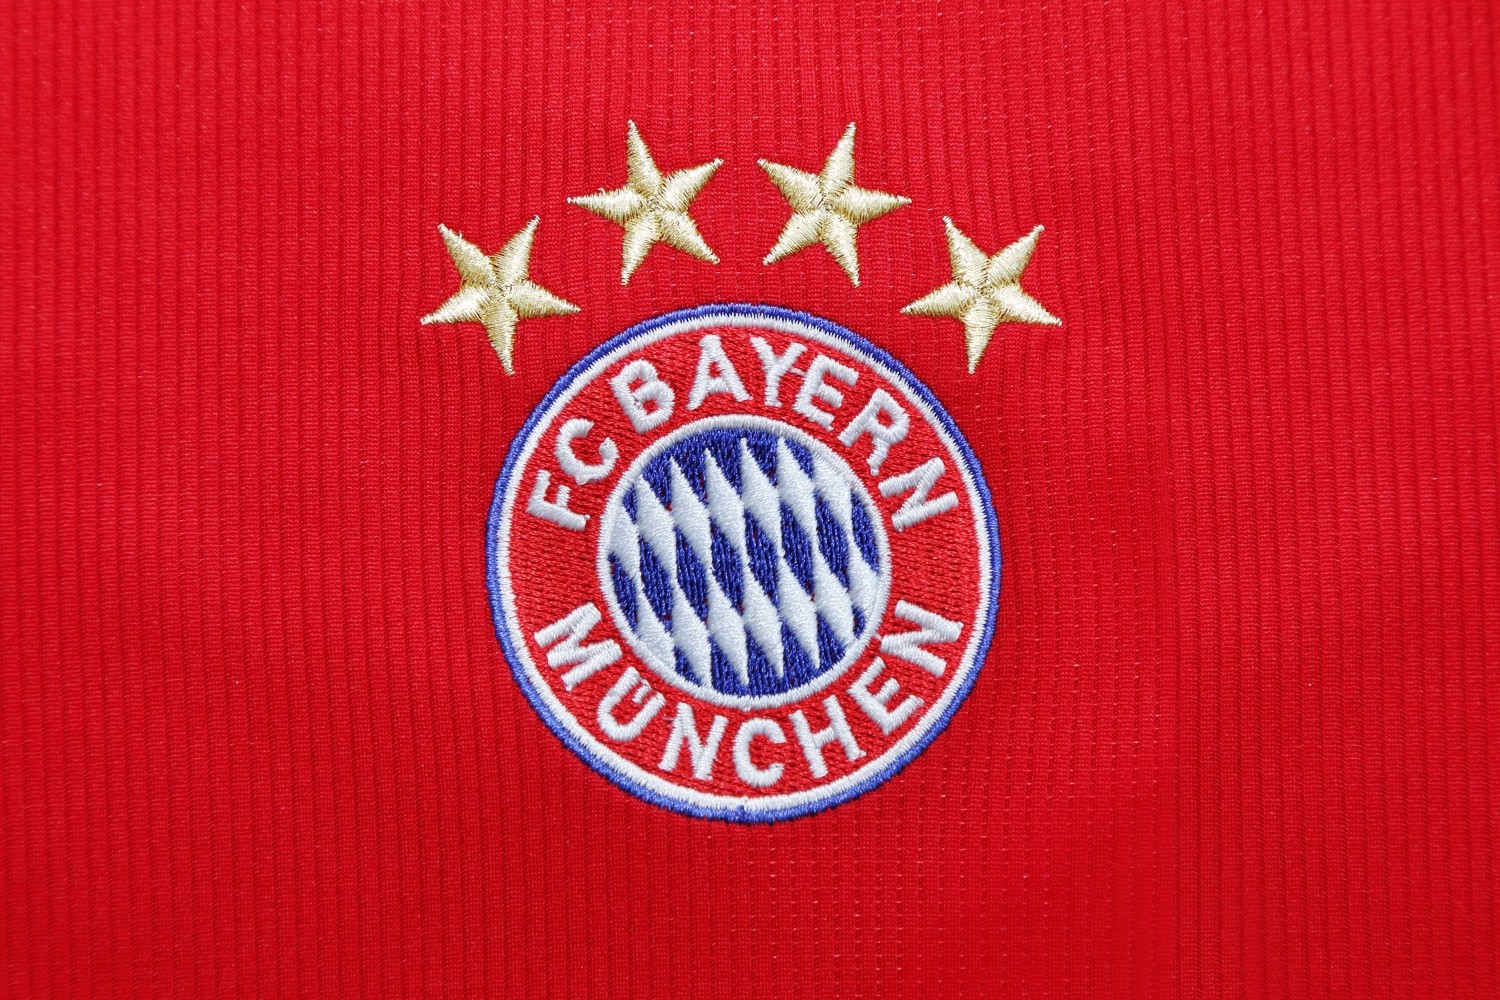 Bayern Monachium ropzocznie sezon później. Pucharowy mecz przełożony [OFICJALNIE]